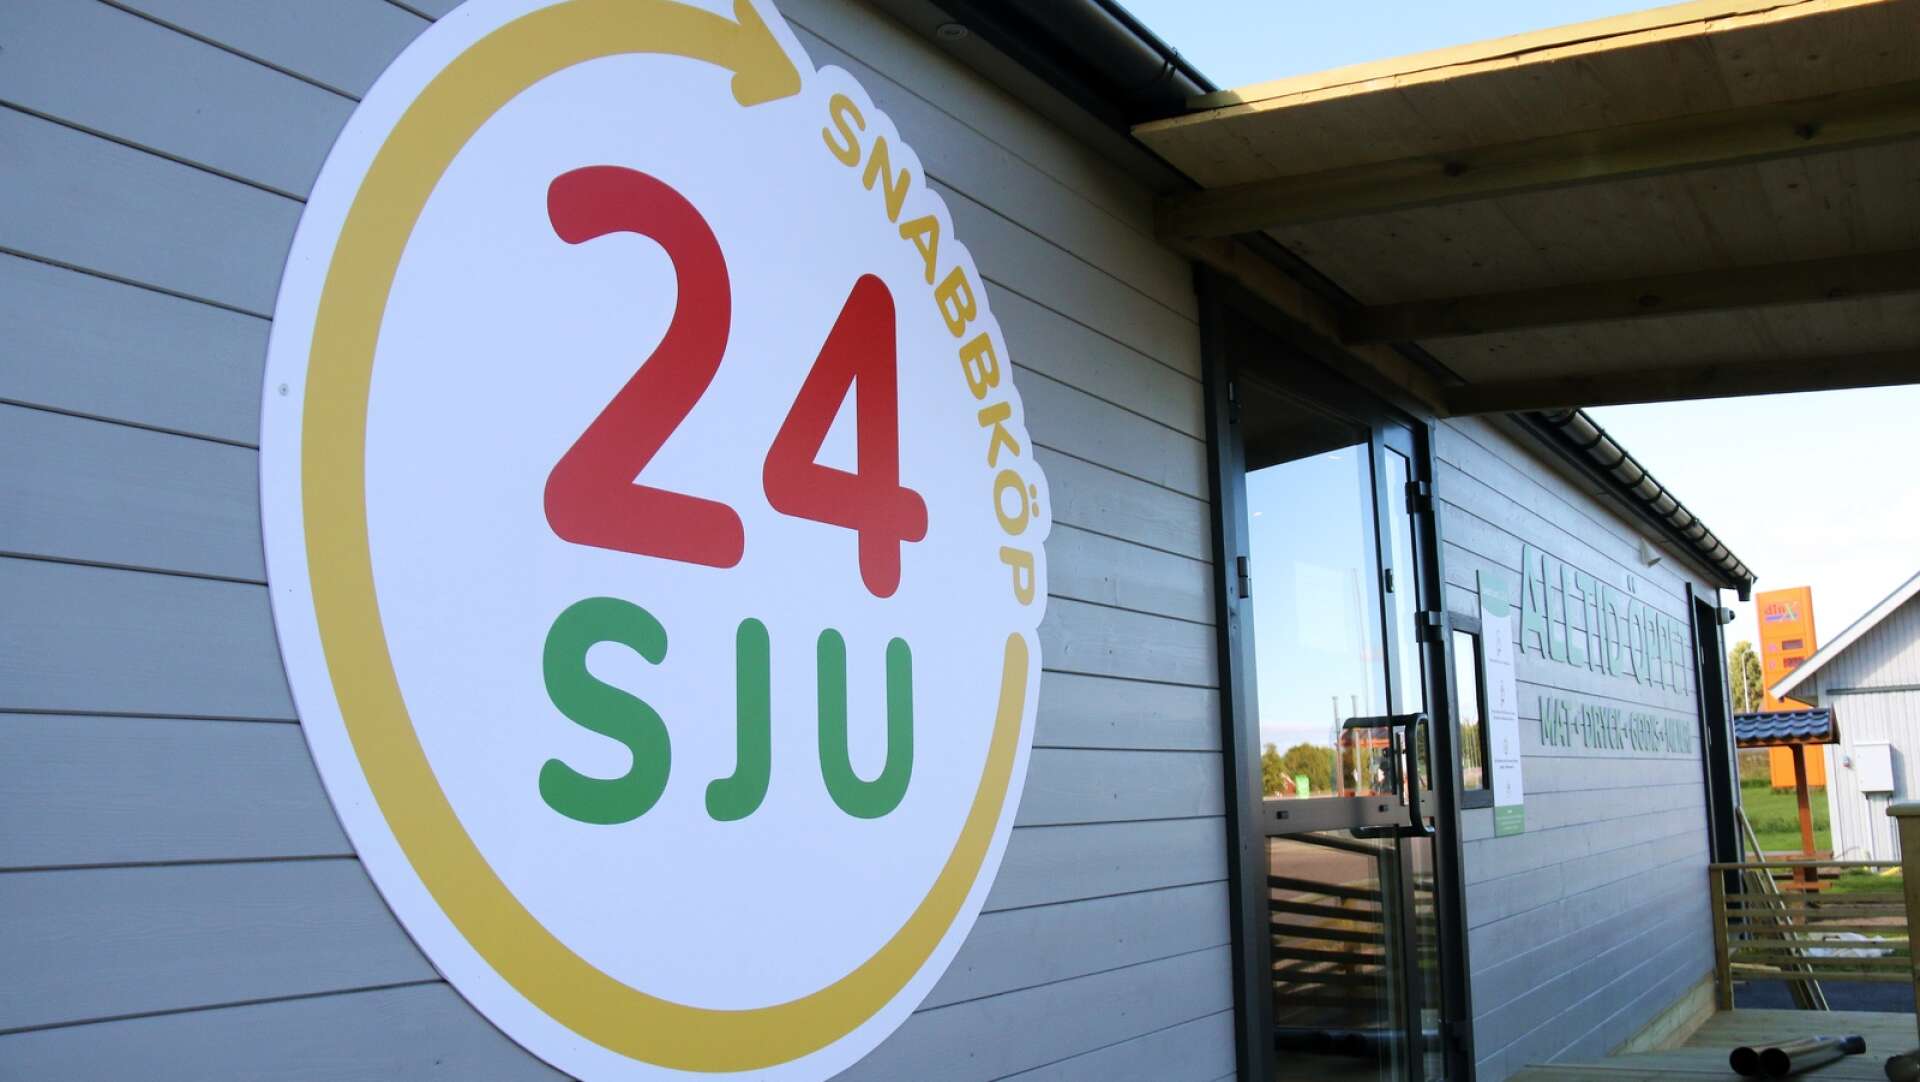 Den obemannade livsmedelsbutiken 24Sju öppnade i Västra Ämtervik i oktober 2022.